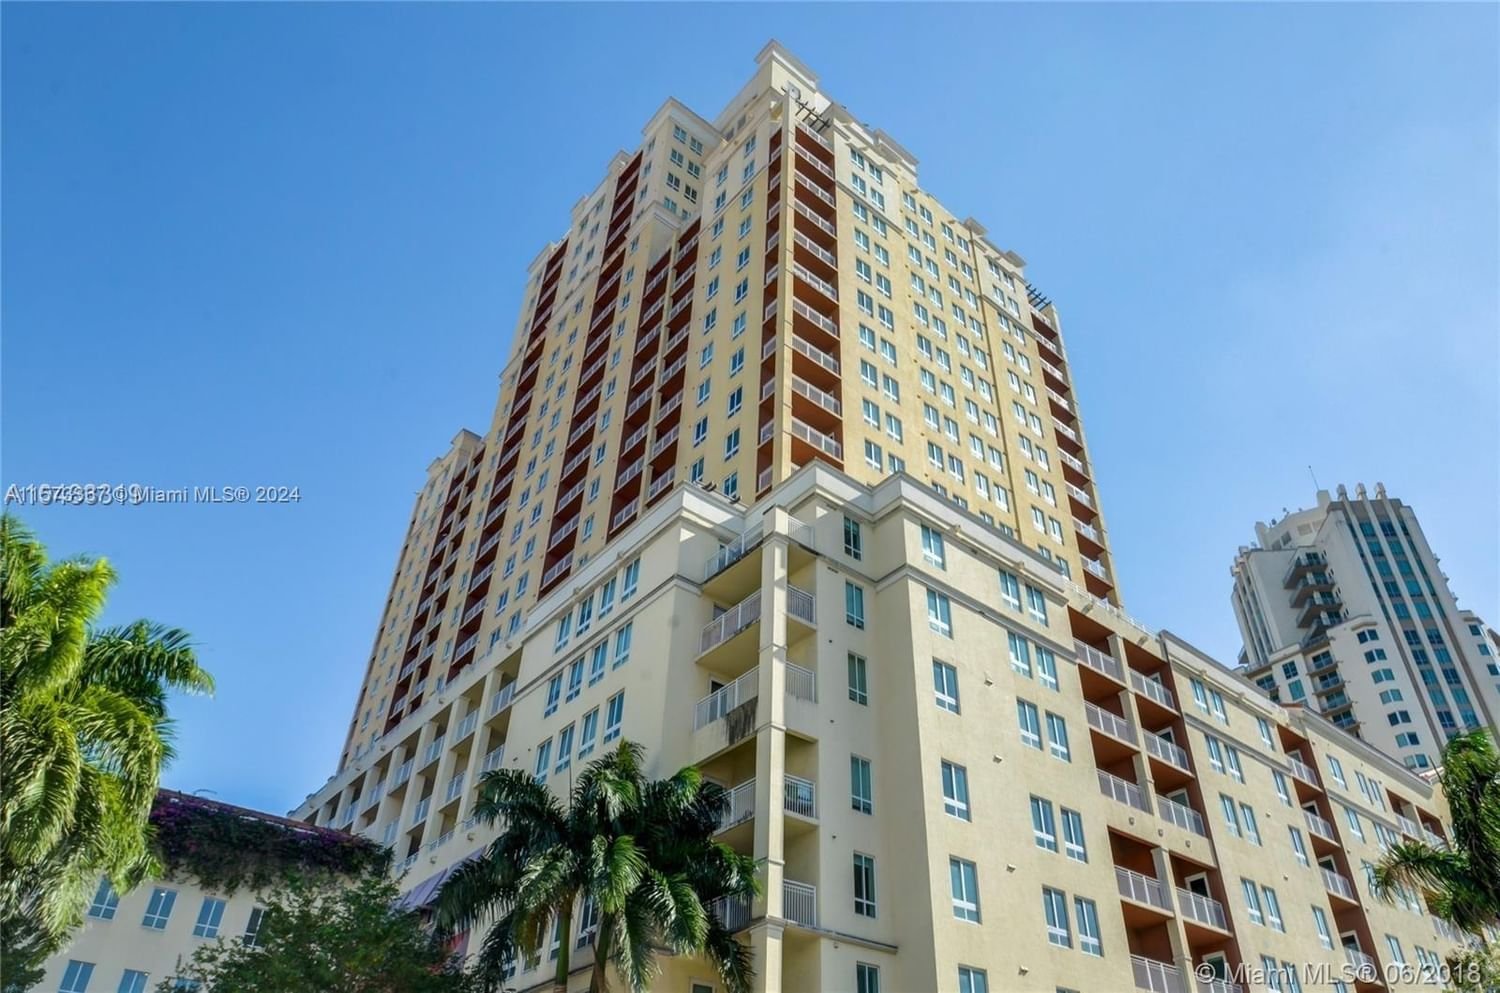 Real estate property located at 7350 89th St #719S, Miami-Dade County, TOSCANO CONDO, Miami, FL